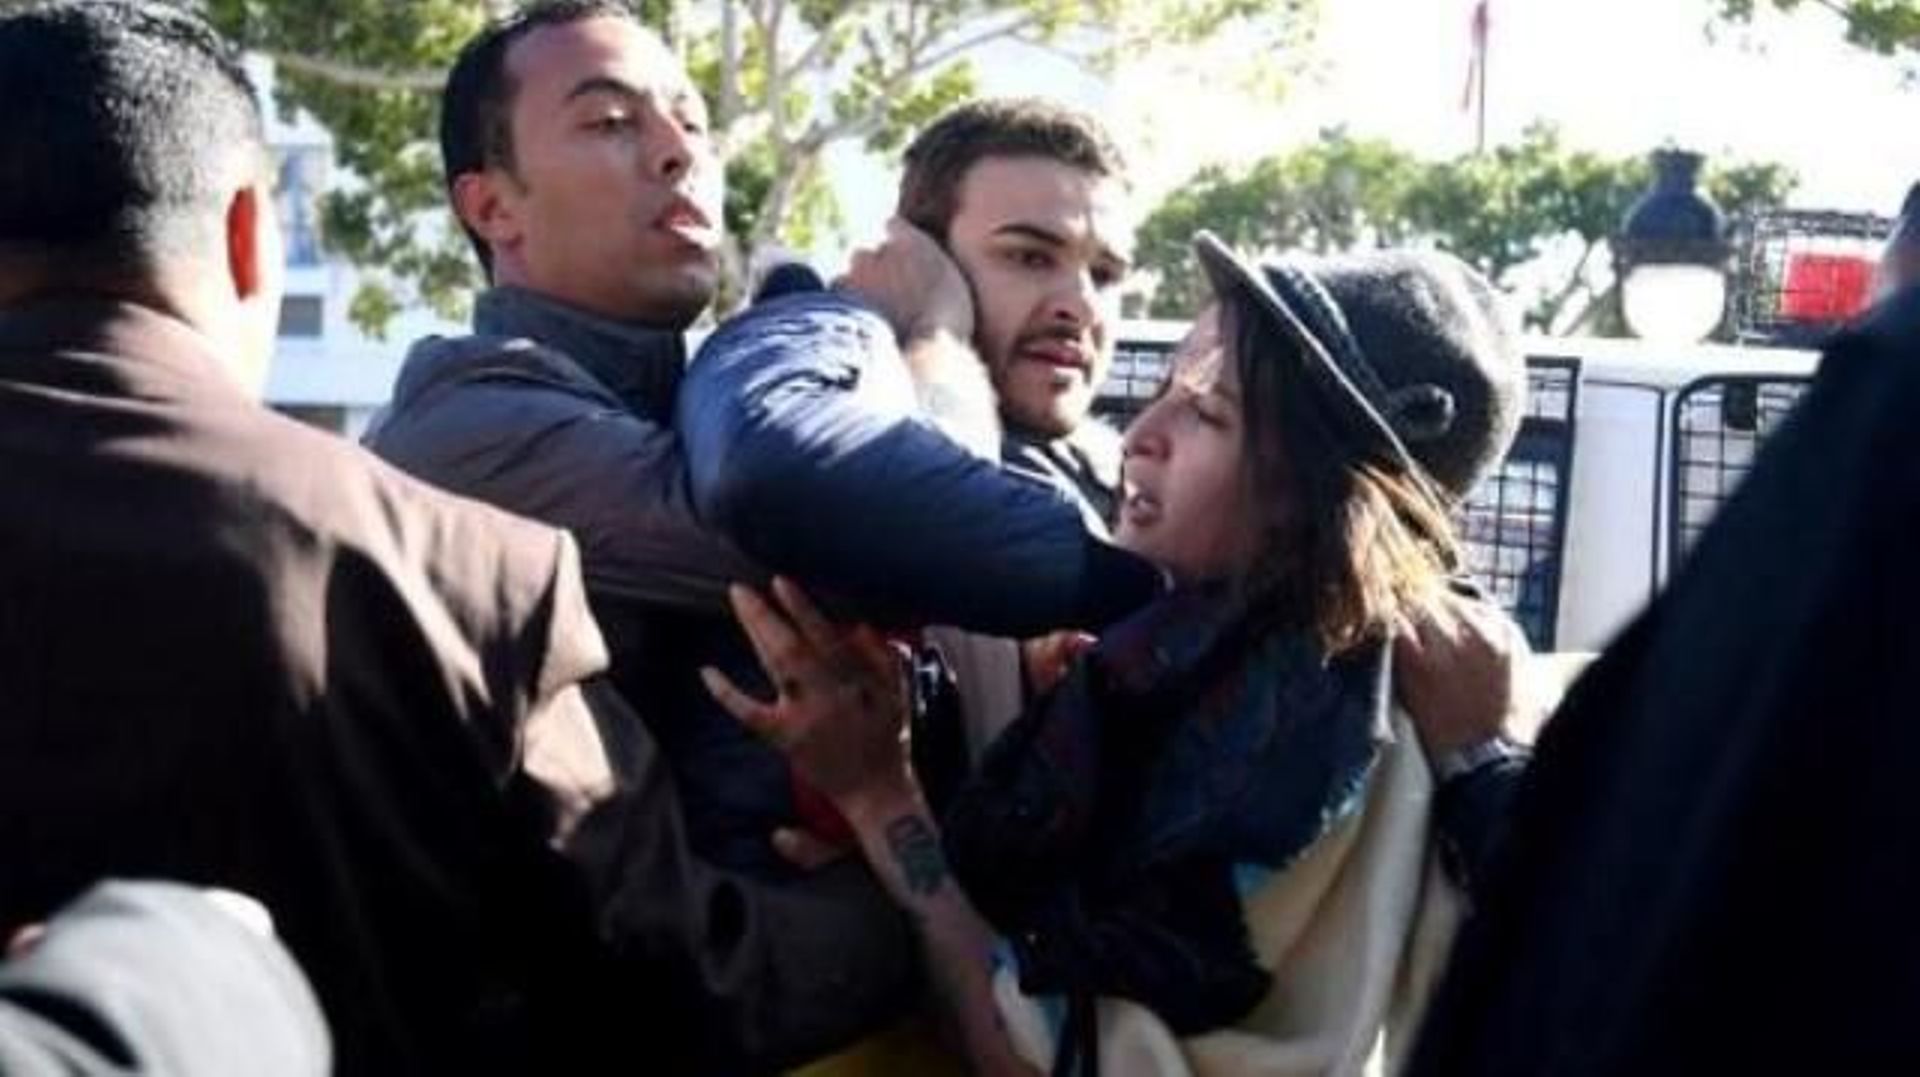 Tunisie: des militants LGBT empêchés de manifester pour raisons de "sécurité"